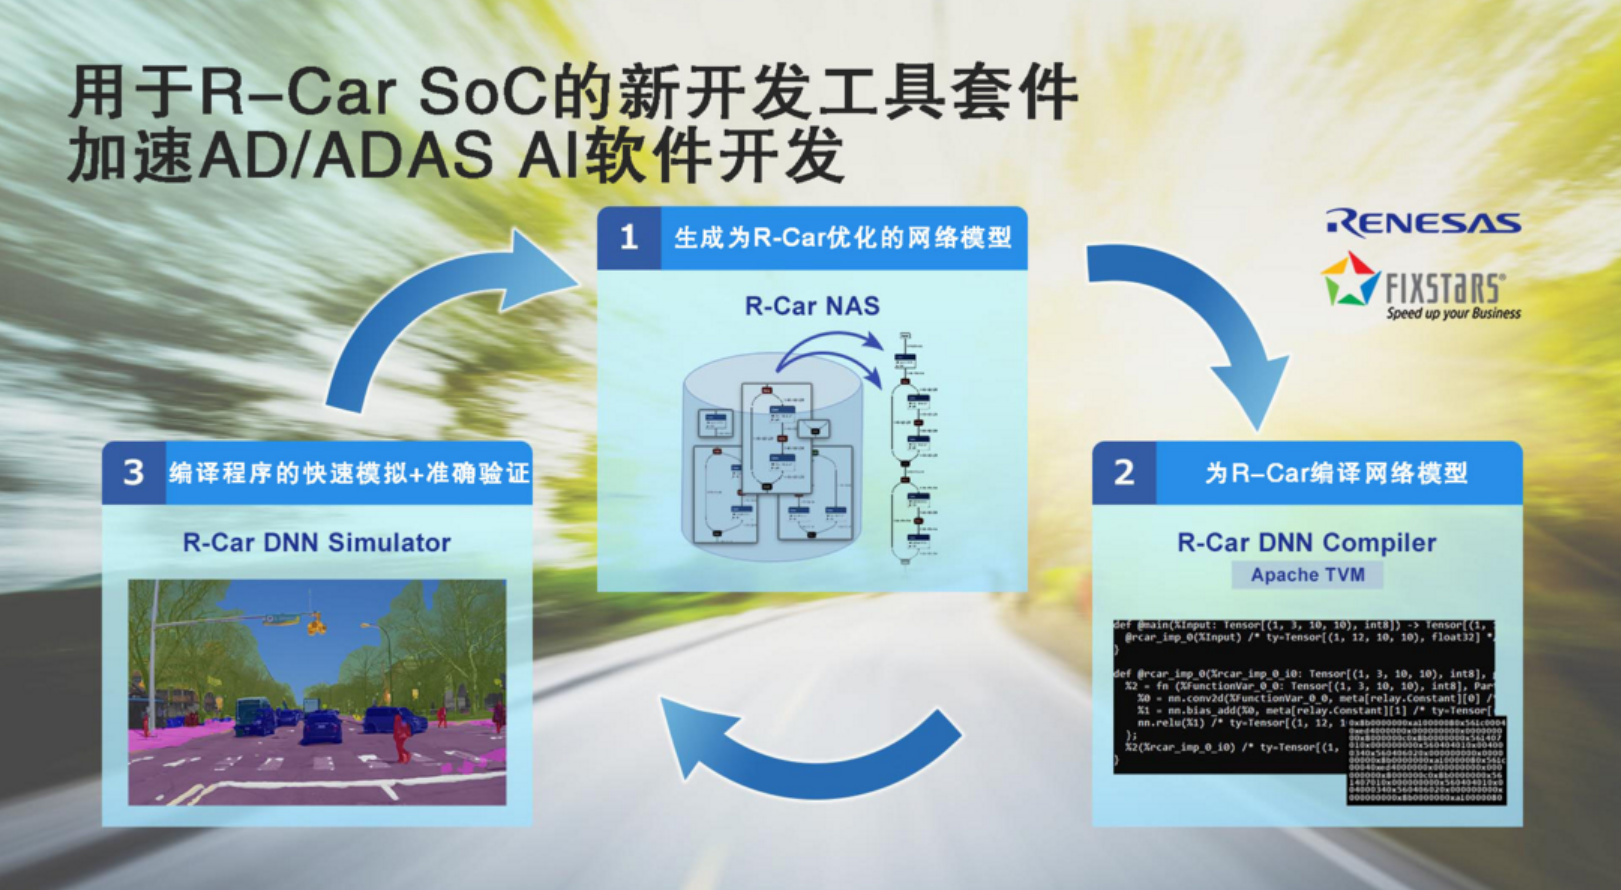 瑞薩電子將與Fixstars聯合開發工具套件 用于優化R-Car SoC AD/ADAS AI軟件